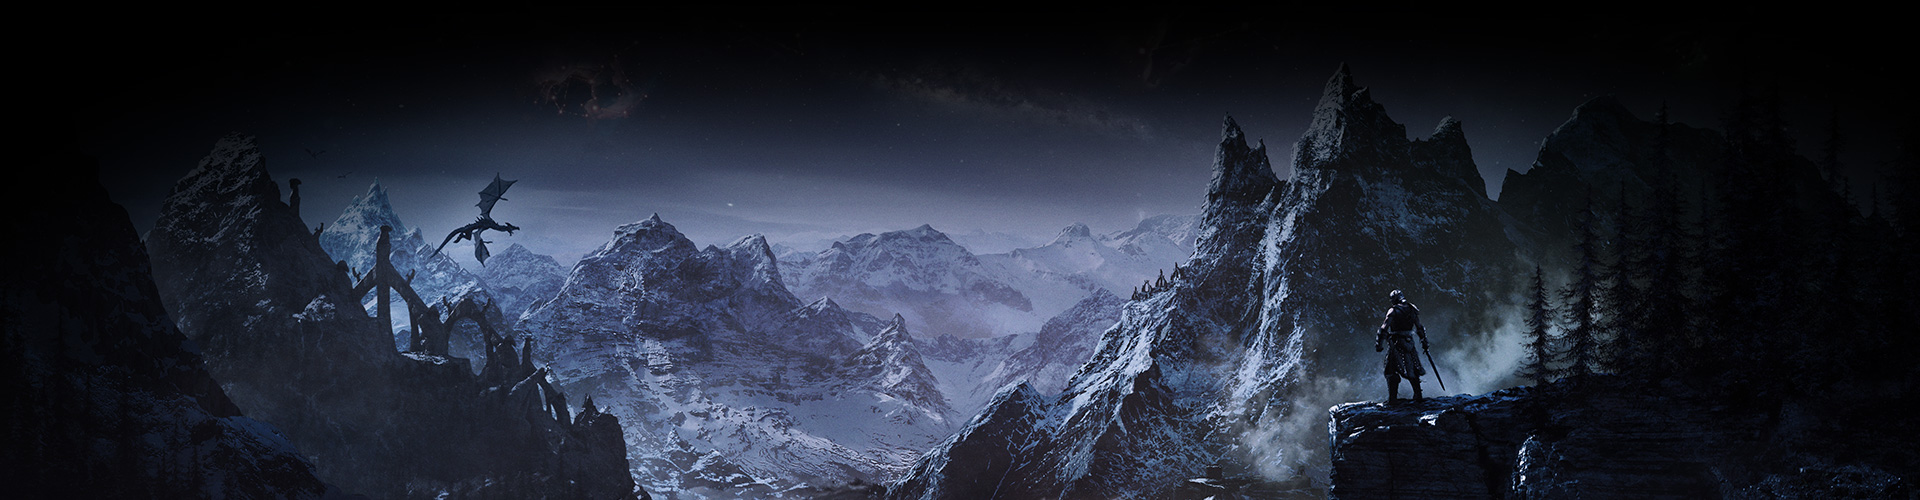 Een personage kijkt naar een vallei met besneeuwde bergen terwijl er een draak overheen zweeft